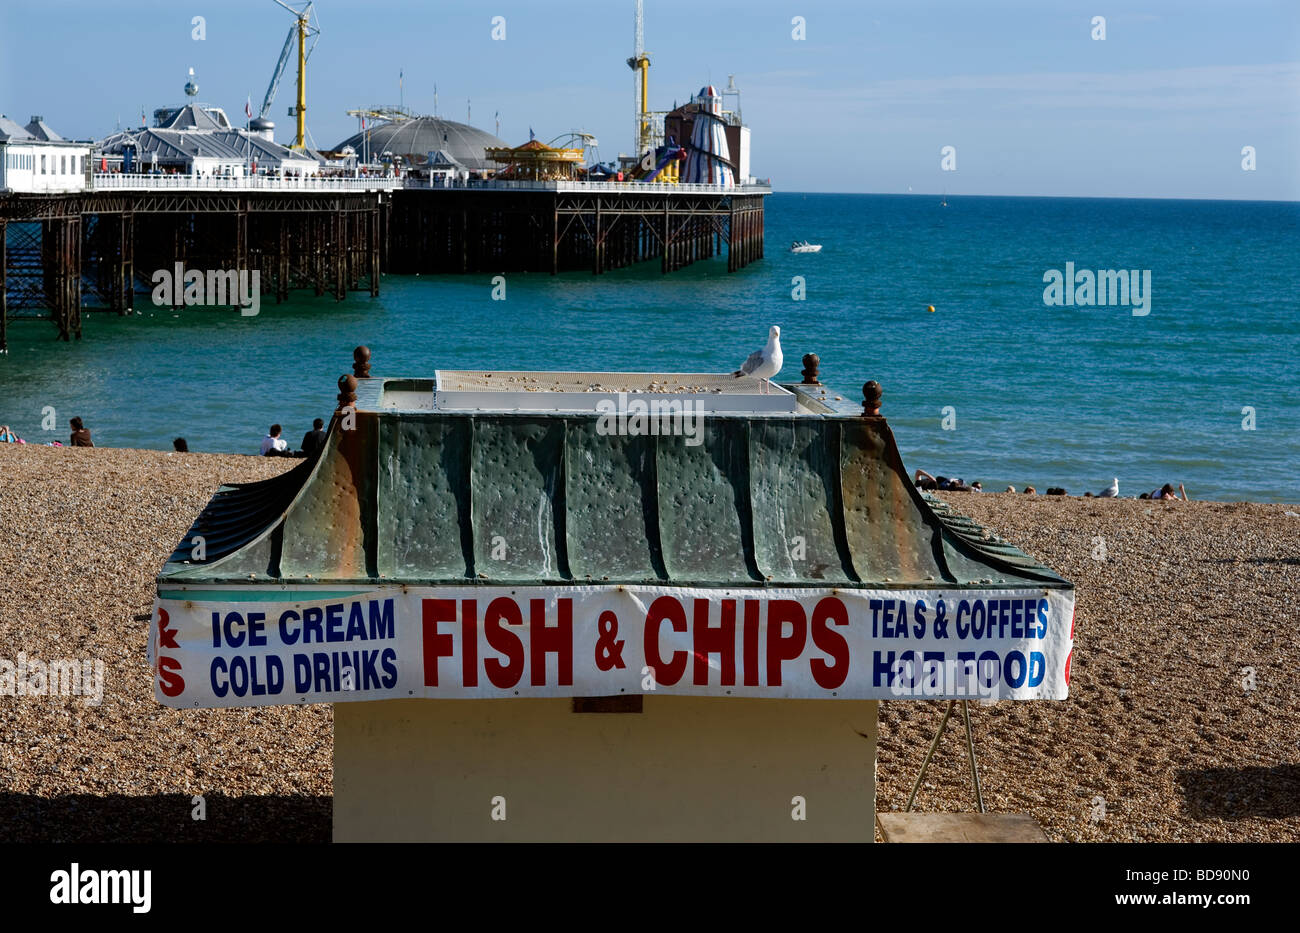 Brighton Grande-Bretagne Angleterre Maison de vacances chez soi heureux l'été chaud soleil plage bleu ciel août fish and chips pier Banque D'Images